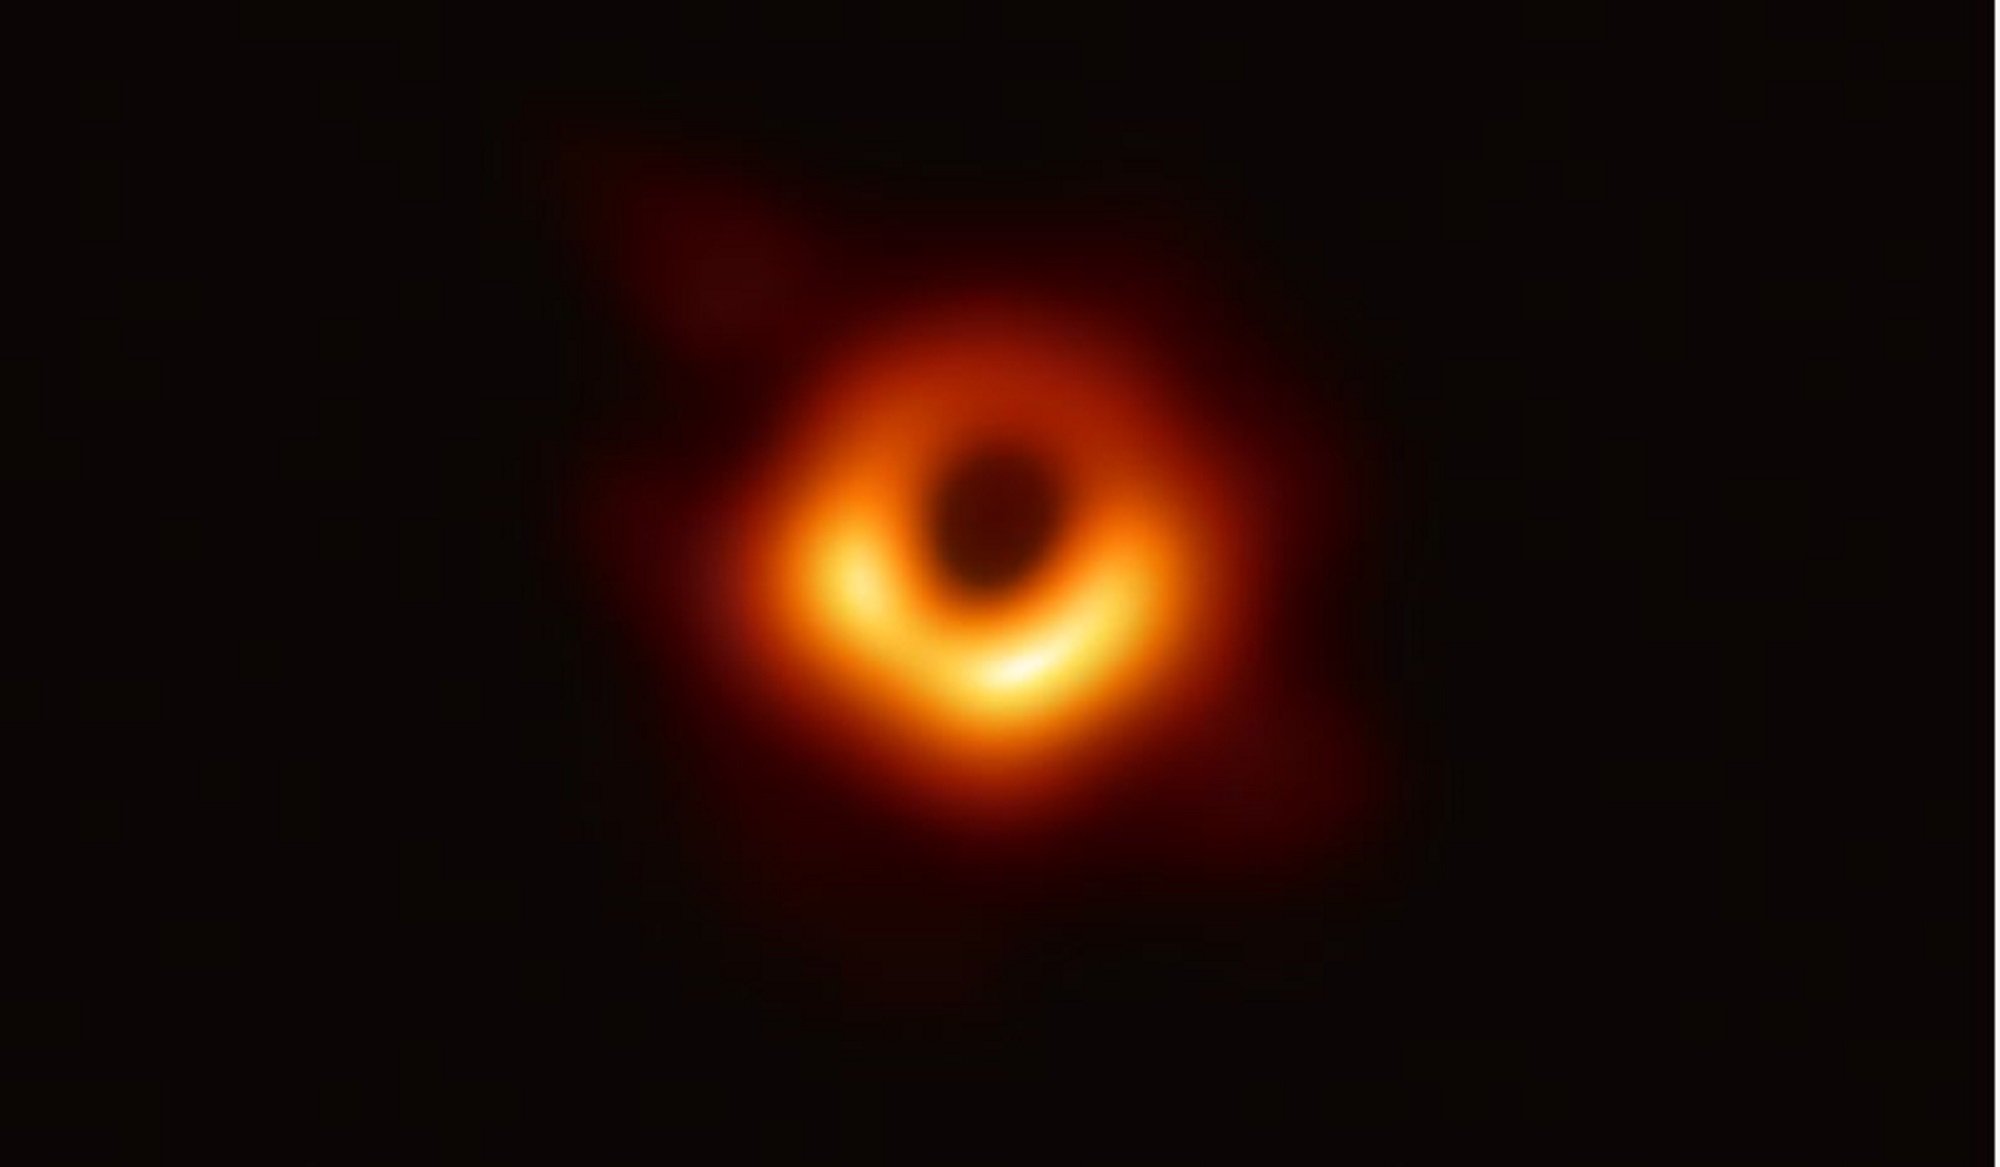 Aquesta és la primera imatge d'un forat negre